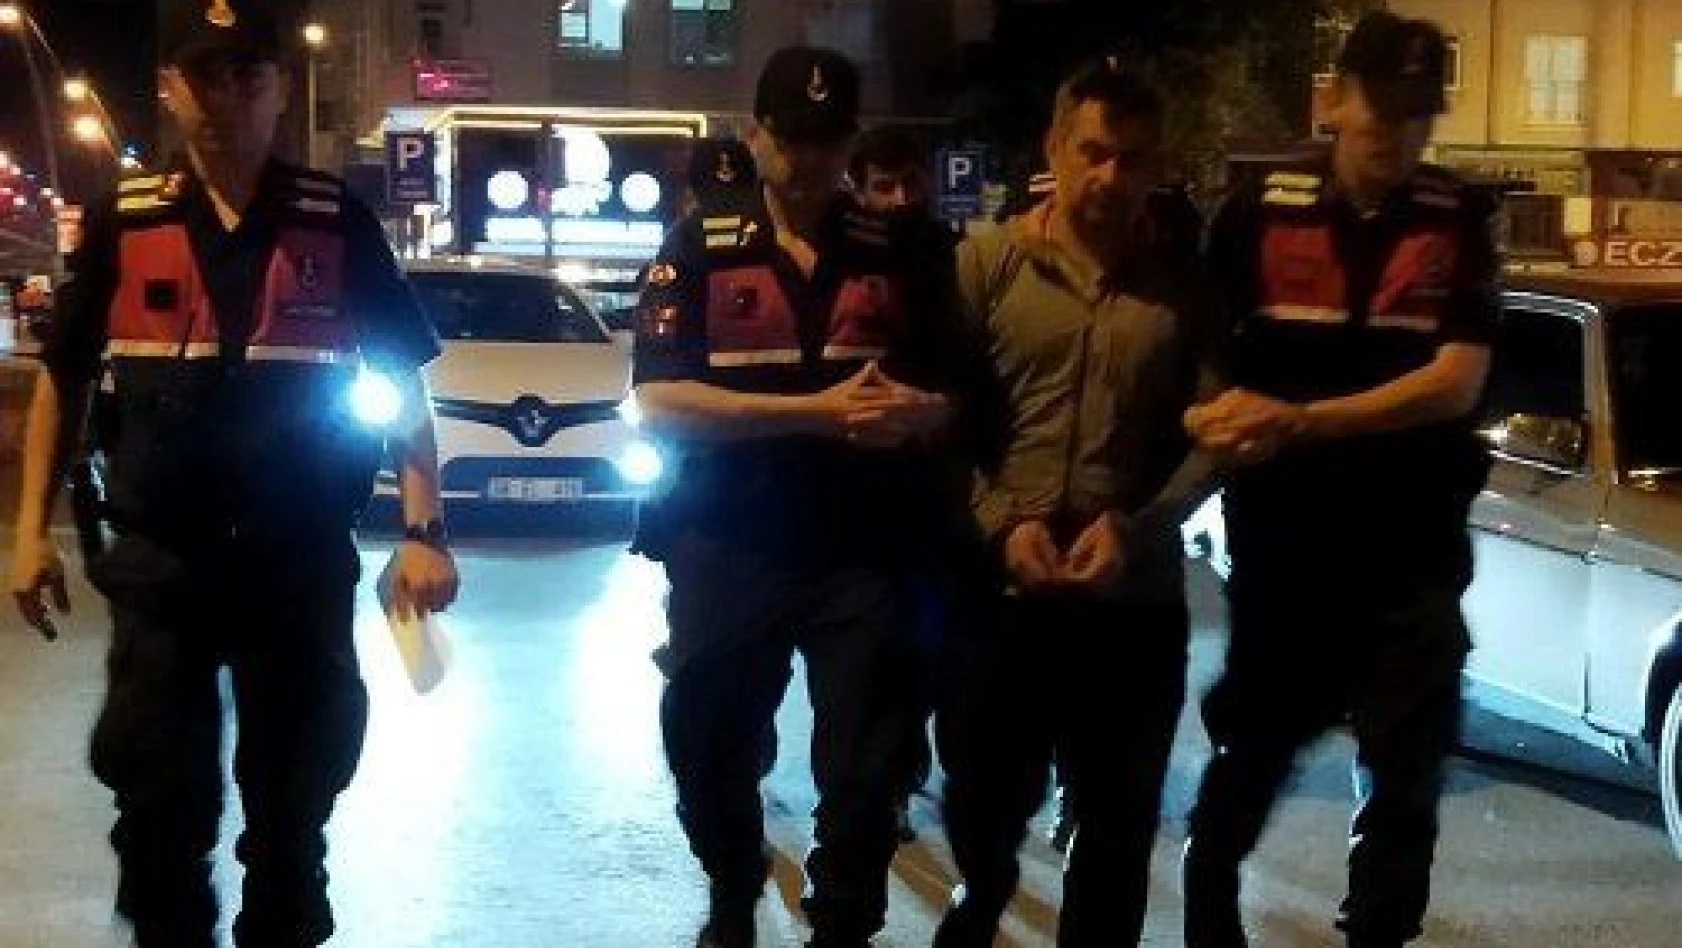 Kayseri'de plakasız araçta hırsızlık şüphelisi 2 zanlı yakalandı